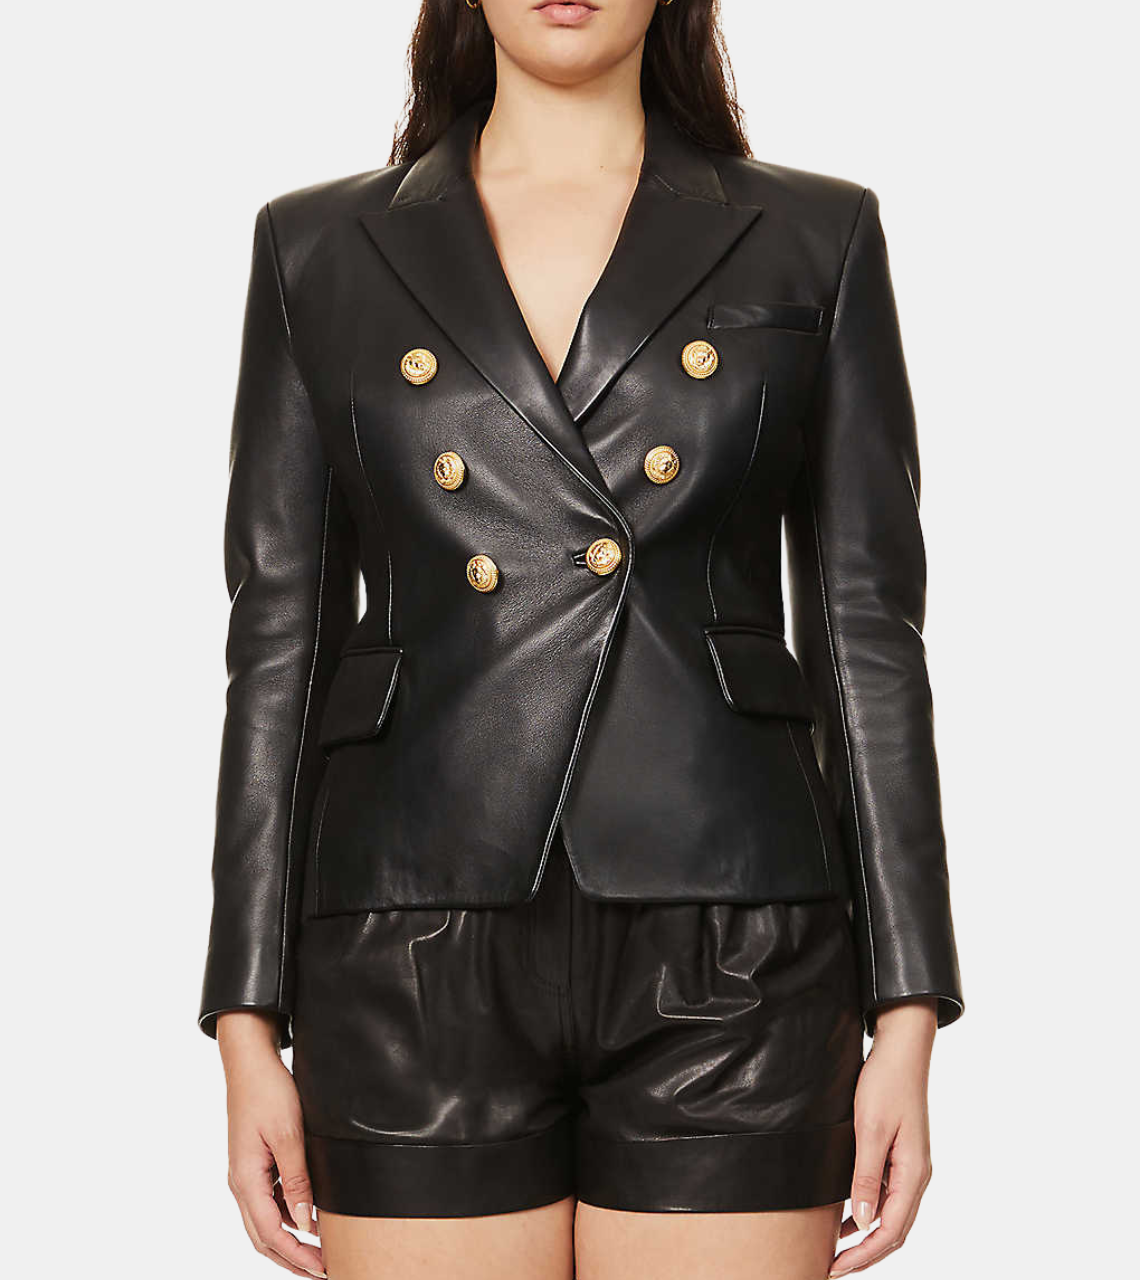 Clarissa Women's Black Leather Blazer